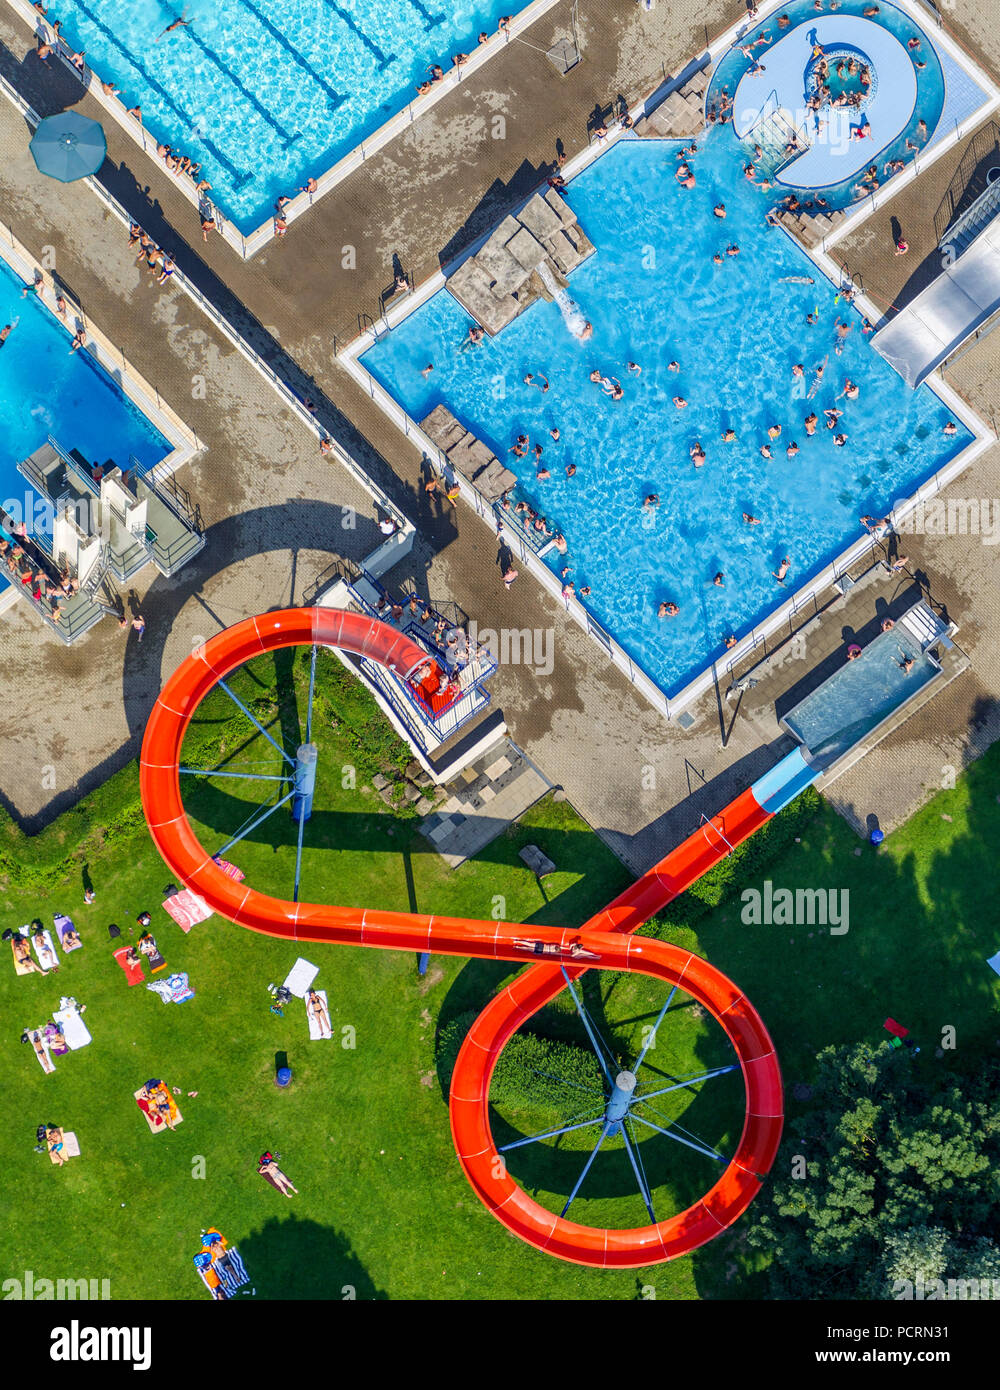 Red Slide, Water Slide, Outdoor Pool, Herdecke, Ruhr area, North Rhine-Westphalia, Germany, Europe Stock Photo